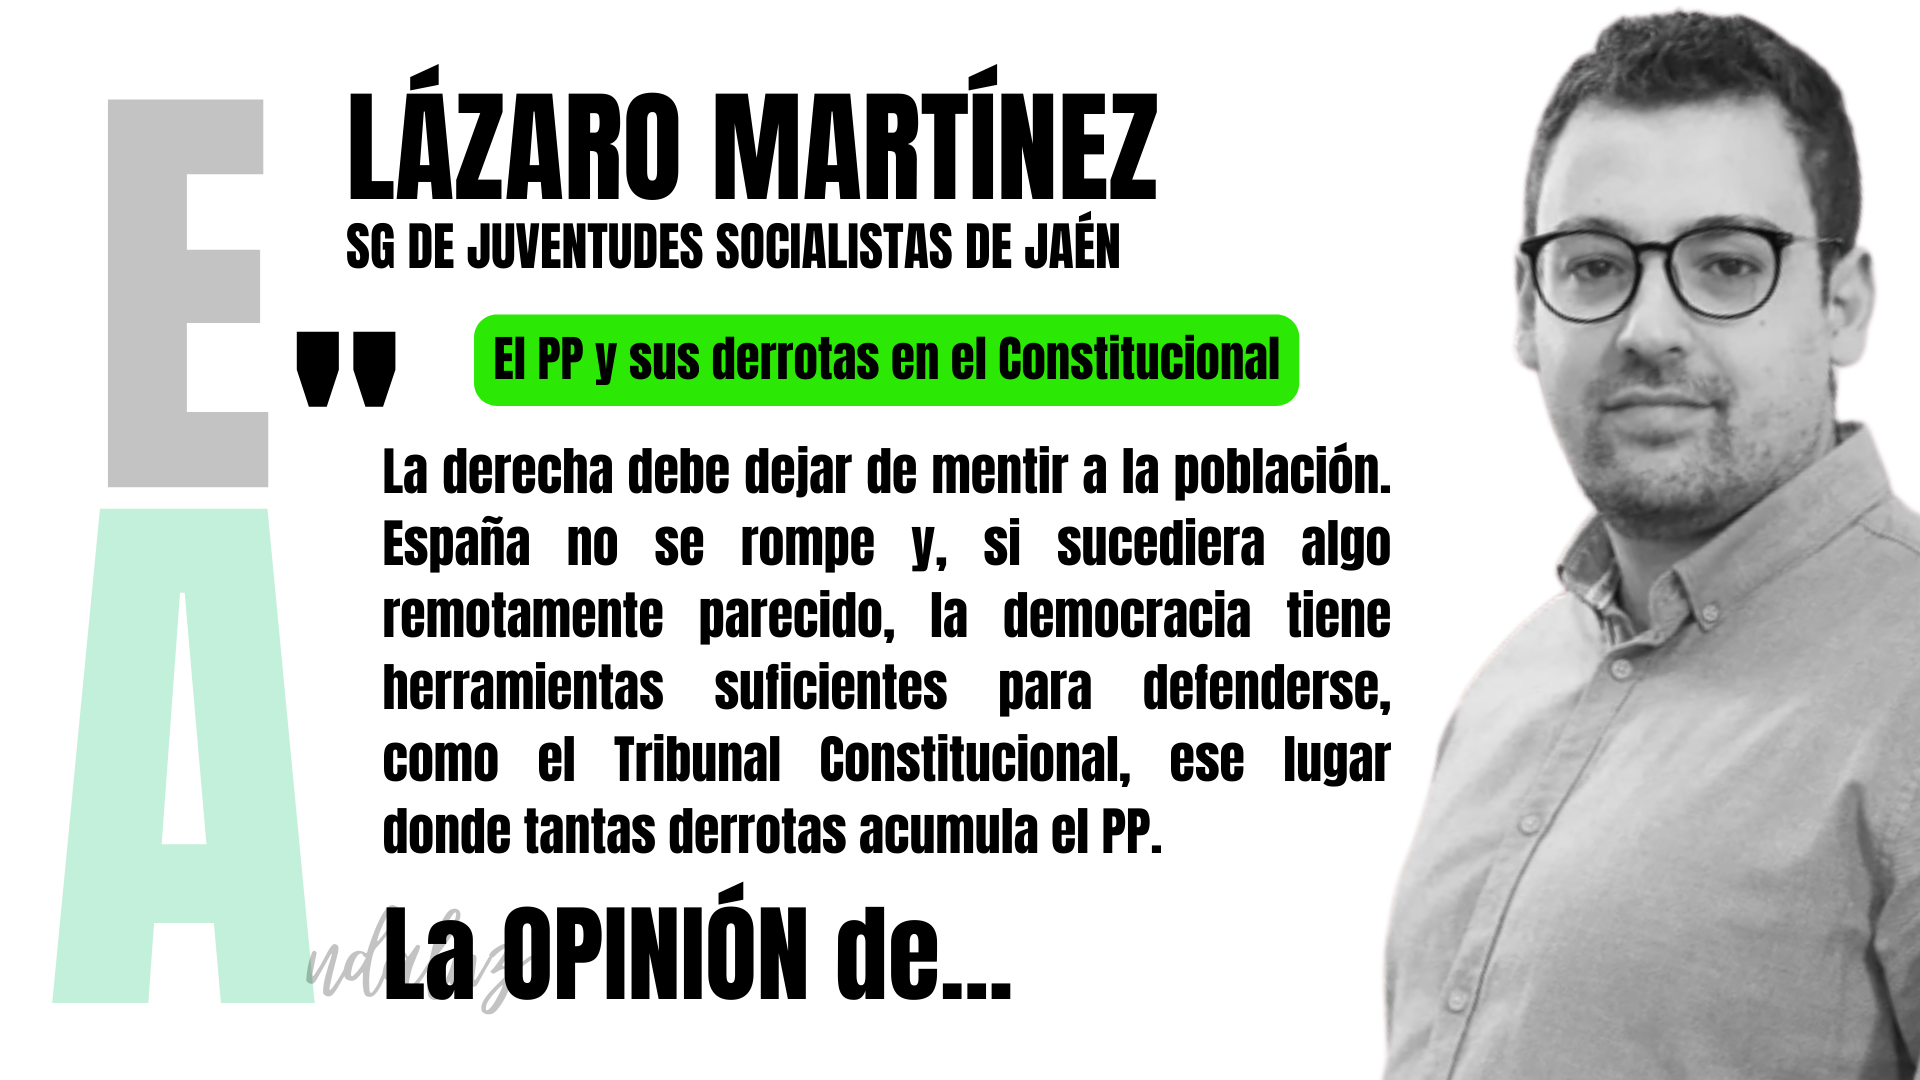 Artículo de opinión de Lázaro Martínez, secretario general de Juventudes Socialistas de Jaén: "El PP y sus derrotas en el Constitucional".